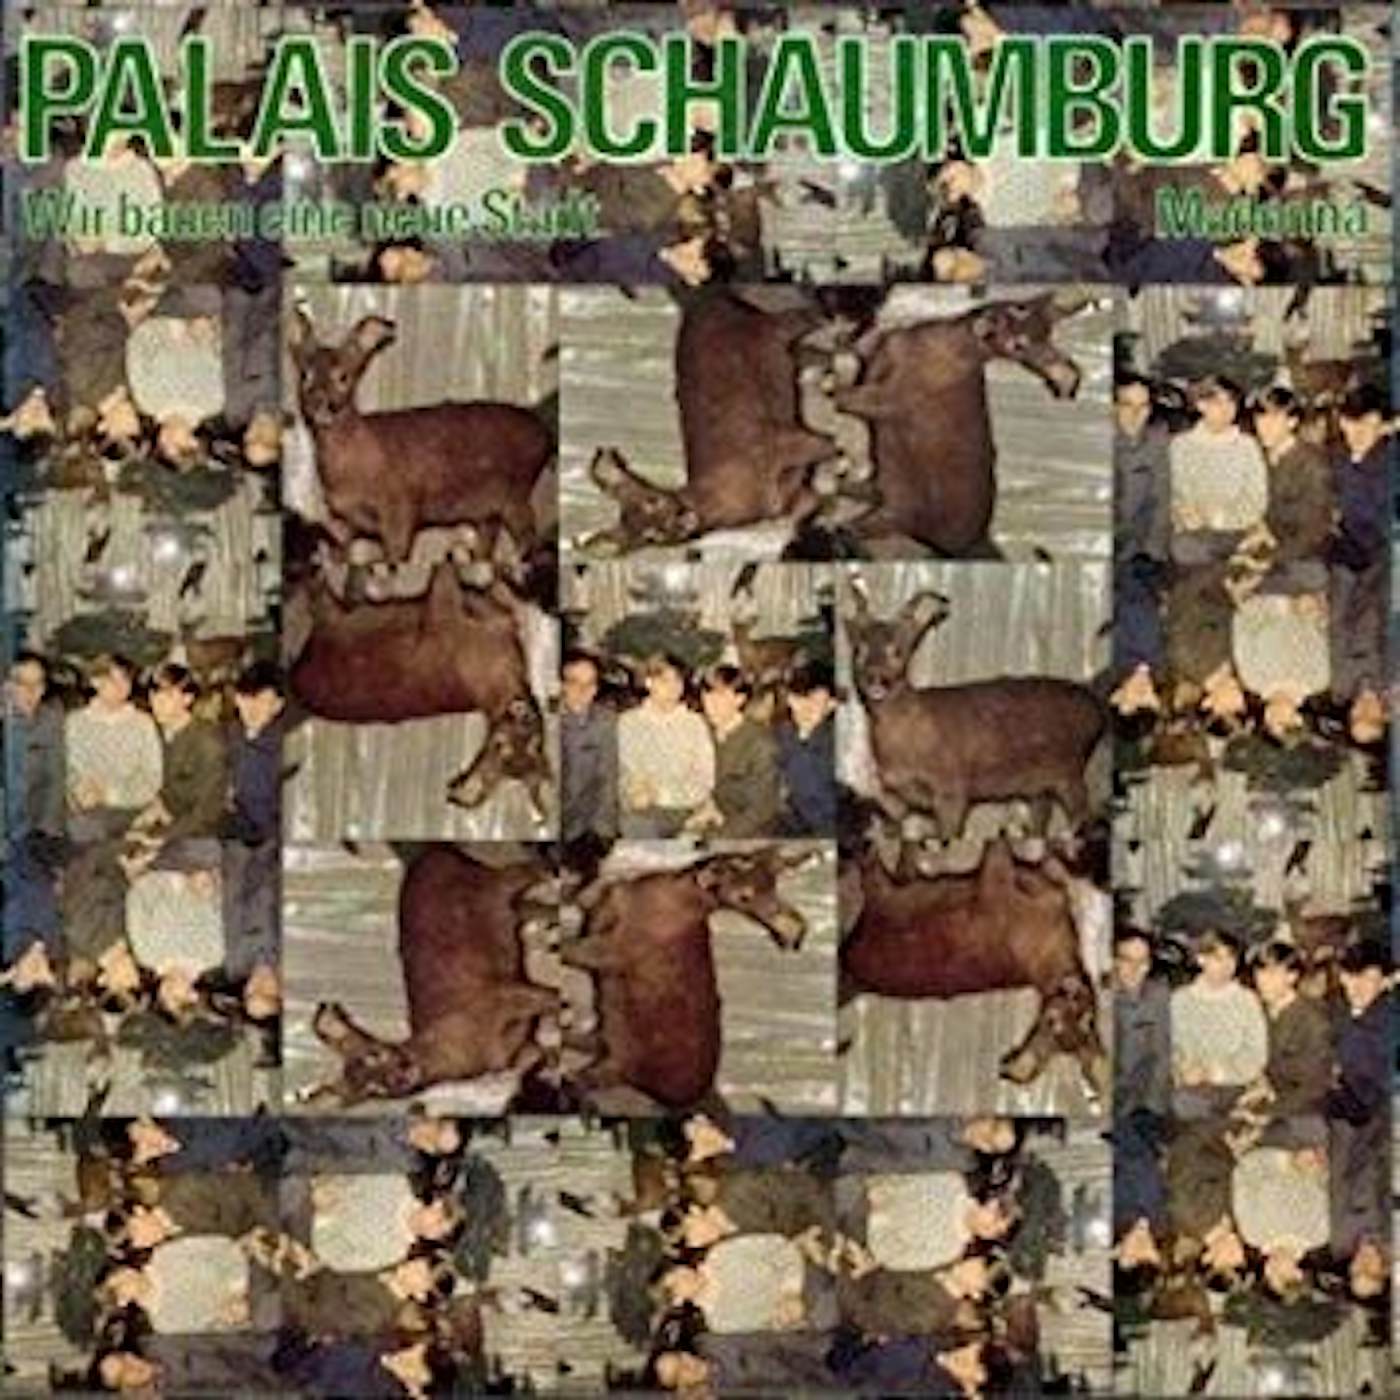 Palais Schaumburg WIR BAUEN EINE NEUE STADT / MADONNA Vinyl Record